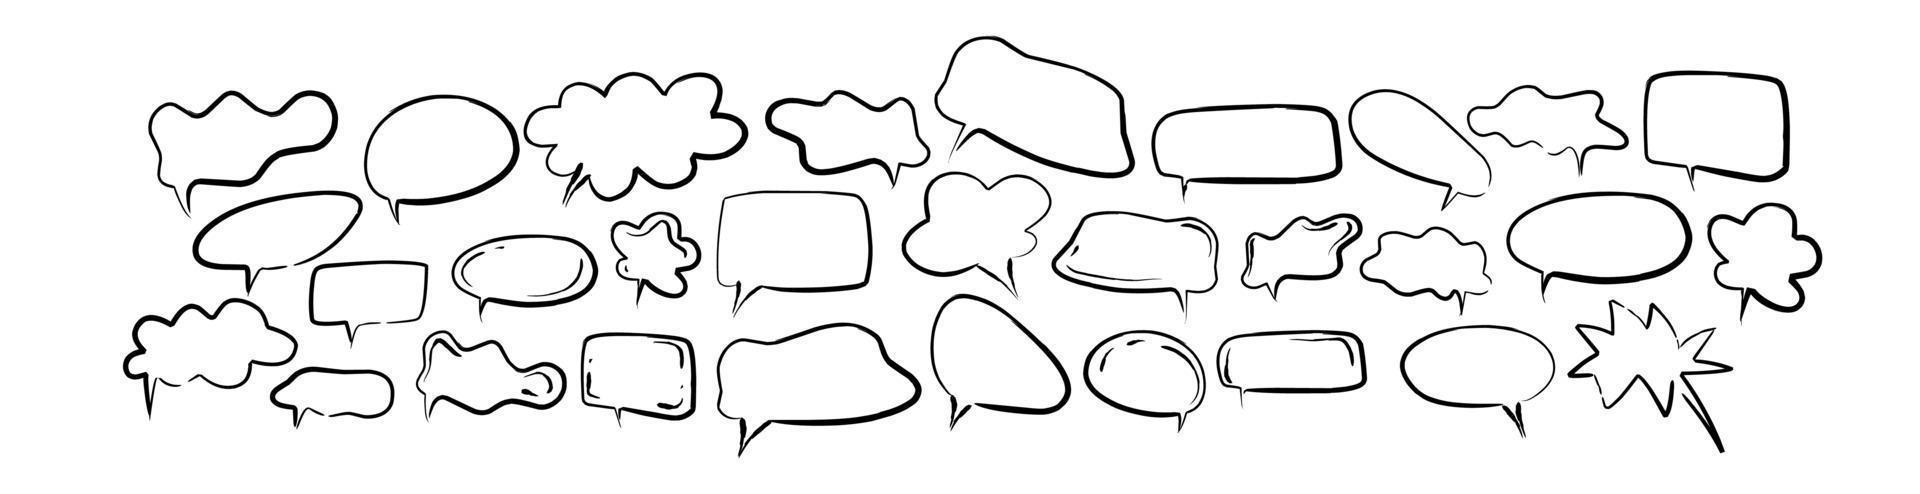 bocadillo de diálogo en estilo doodle dibujado a mano vector